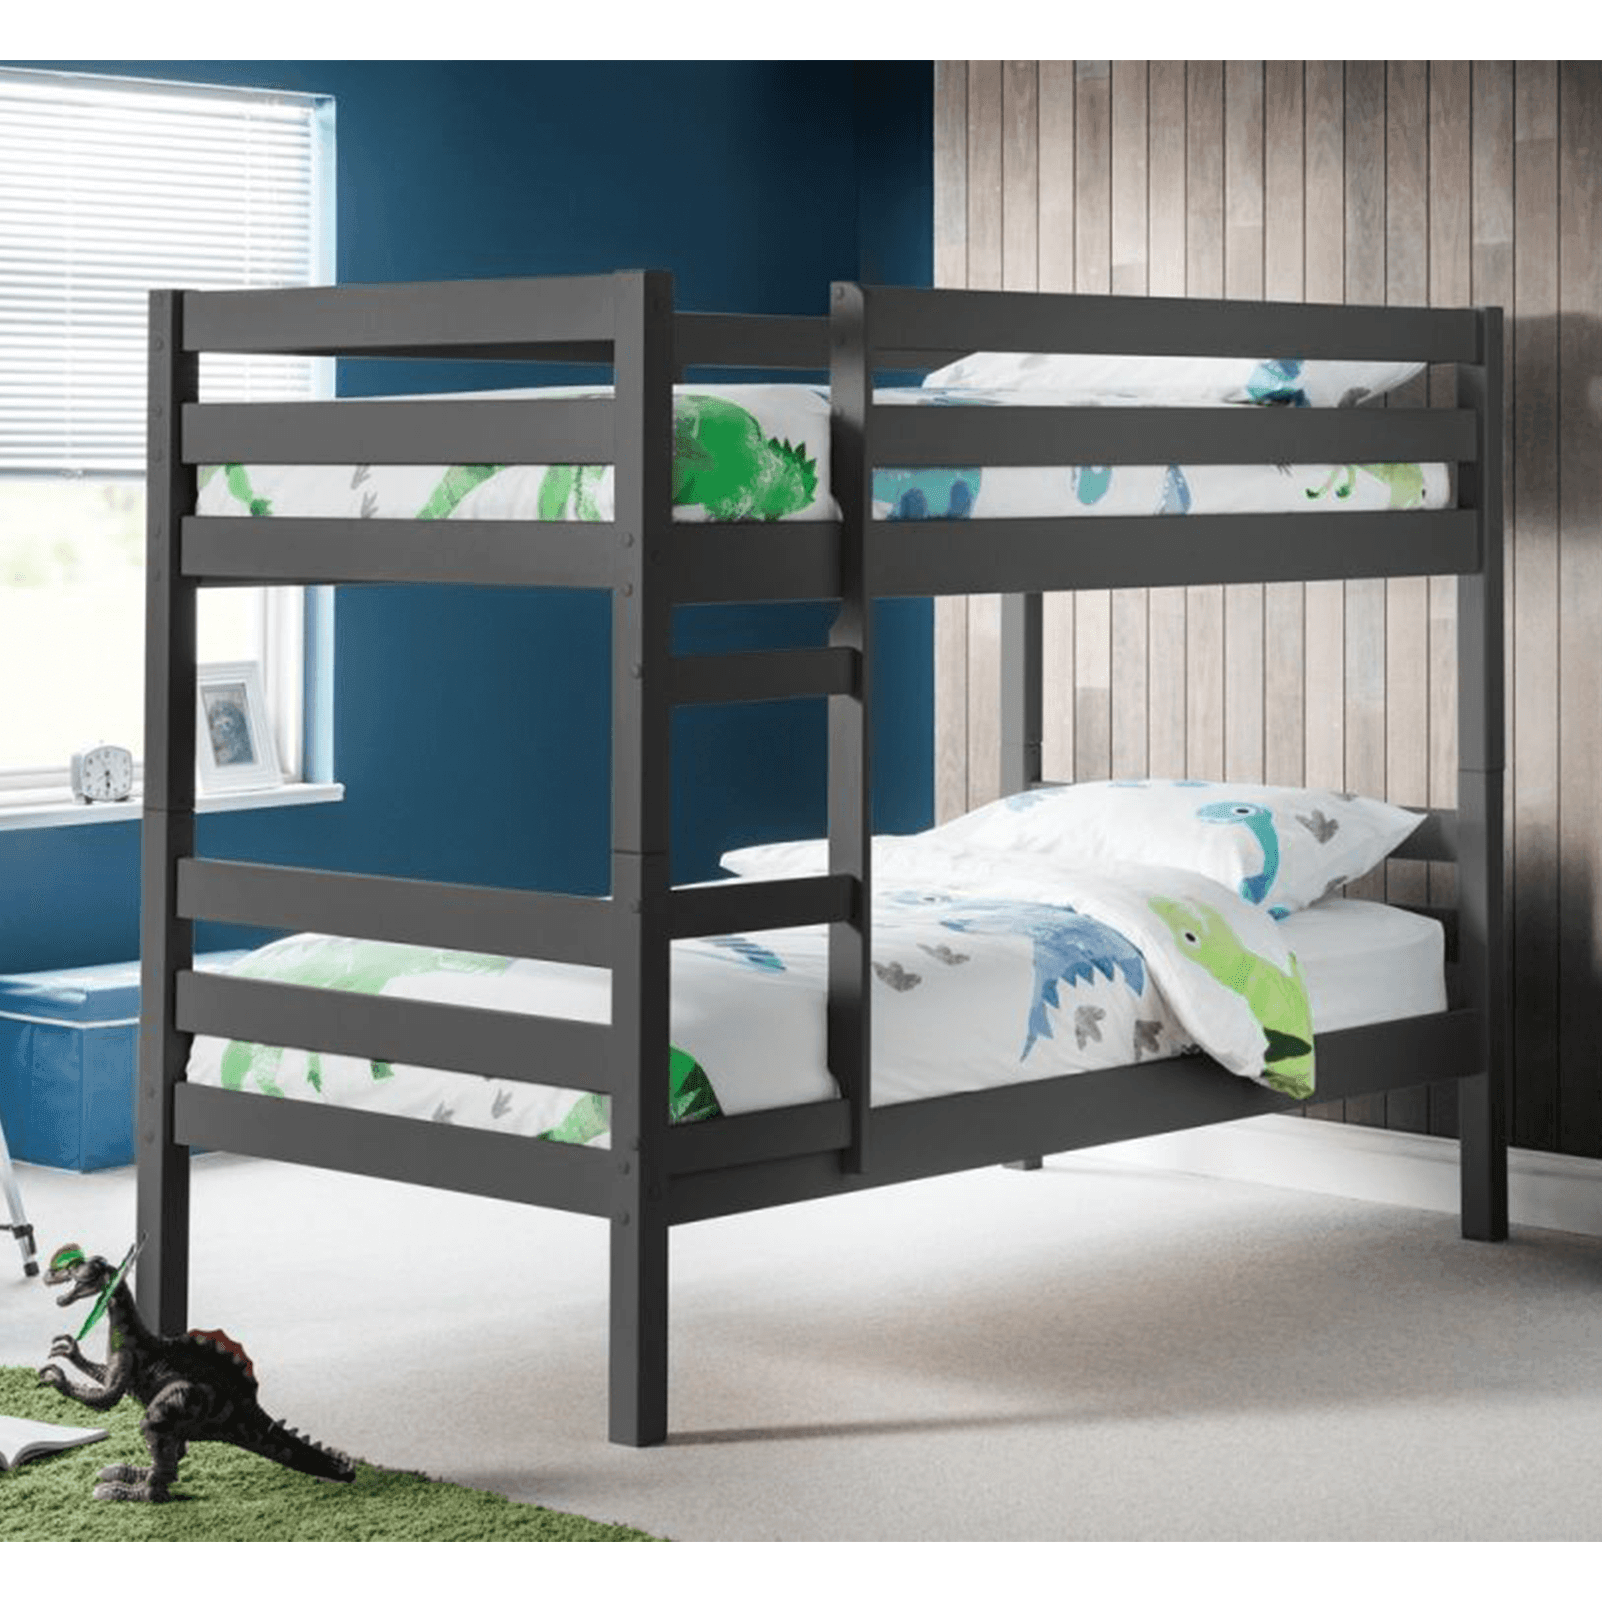 Black wood bun bed frame